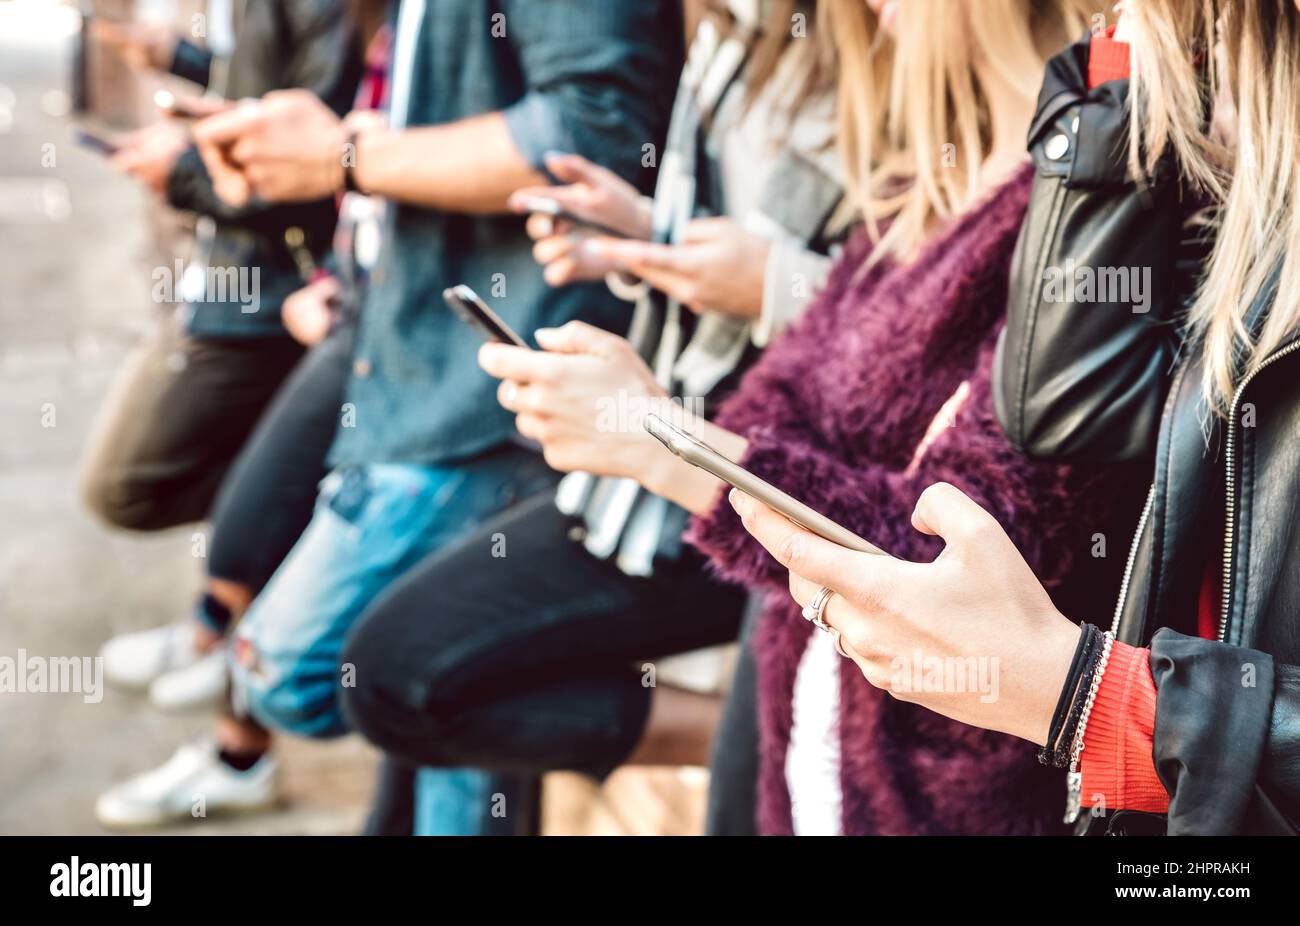 Flache Ansicht von Freunden Hände teilen Inhalte auf Mobiltelefonen - Milemial Menschen süchtig nach Smartphone-Geräten - Technologie Lebensstil Konzept w Stockfoto